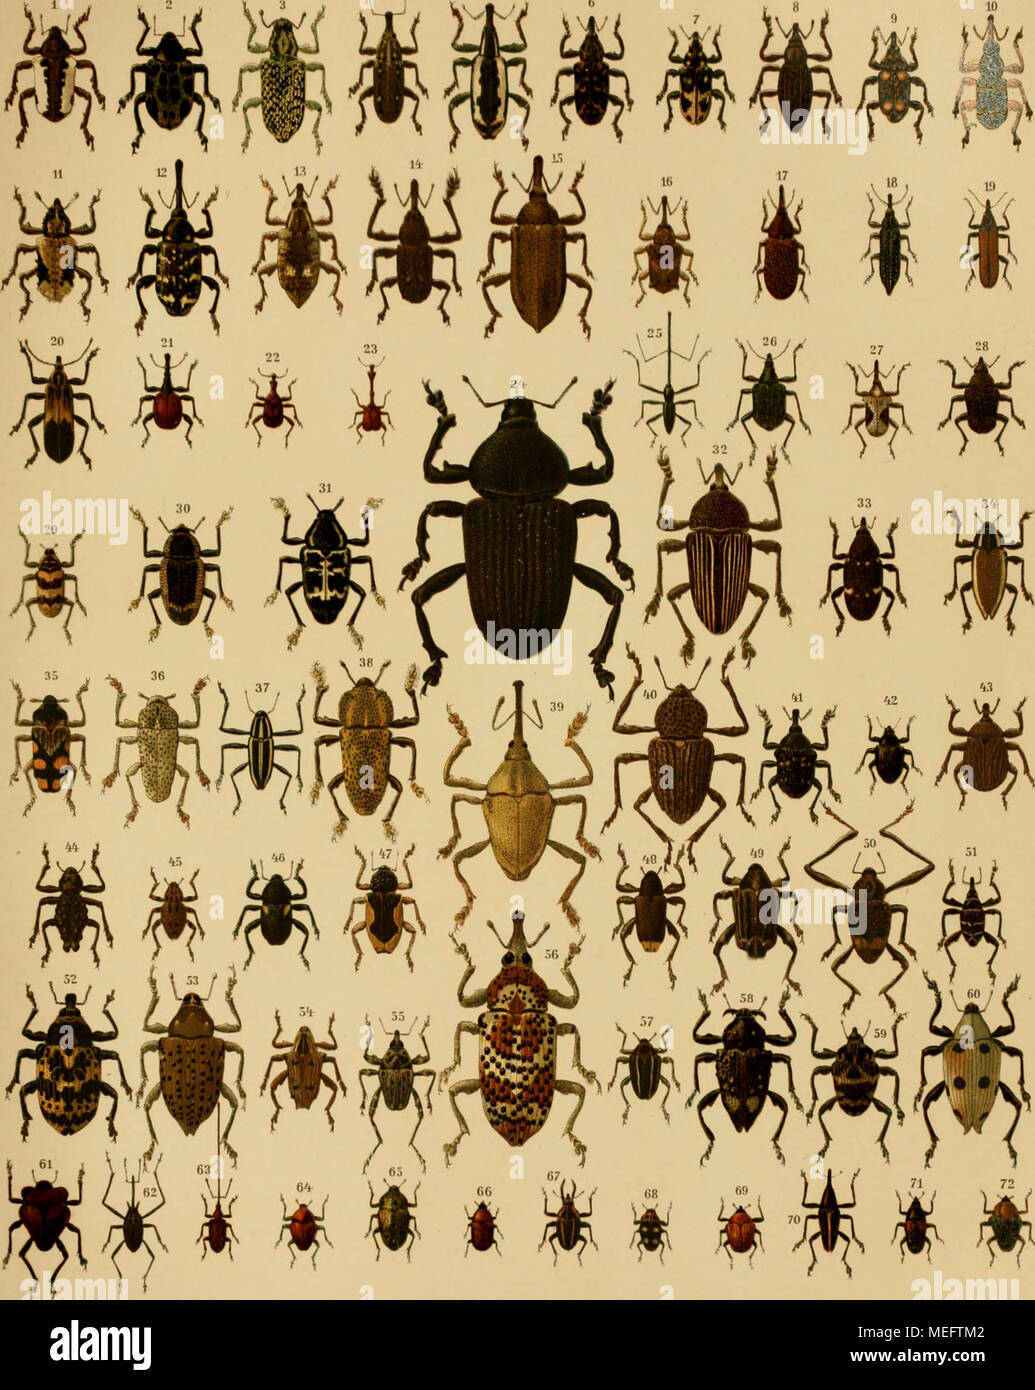 . Die Käfer exotischen in Wort und Bild . $ W i W Ä Ä "m &AMP; w 1. Sternuchus excellens. 2. Tylomus gurtarus. 3. Chrysolopus spectabilis. 4. Eudocimus mannerheimi. 5. Hilipus lactariu". 6. H. undabundus. 7. H. pictus. 8. H. dejeani. 9. H. onychinus. 10. H. degeeri. 11. H. trachyptenis. 12. H. gennari. 13. H. dahlborni. 14. Orthorrhinus cylindrirostris. 15. Hilipus acatium. 16. Rachio- des bicaudatus. 17. Tranes virgosi. 18. Belus semipunctatus. 19. Rhinotia haenioptera. 20. Hoinaloccrus lyciformis. 21. Dimidiatus Cybebus. 22. Apoderus tranque- baricus. 23. A. longicollis. 24. Homalonotus Foto Stock